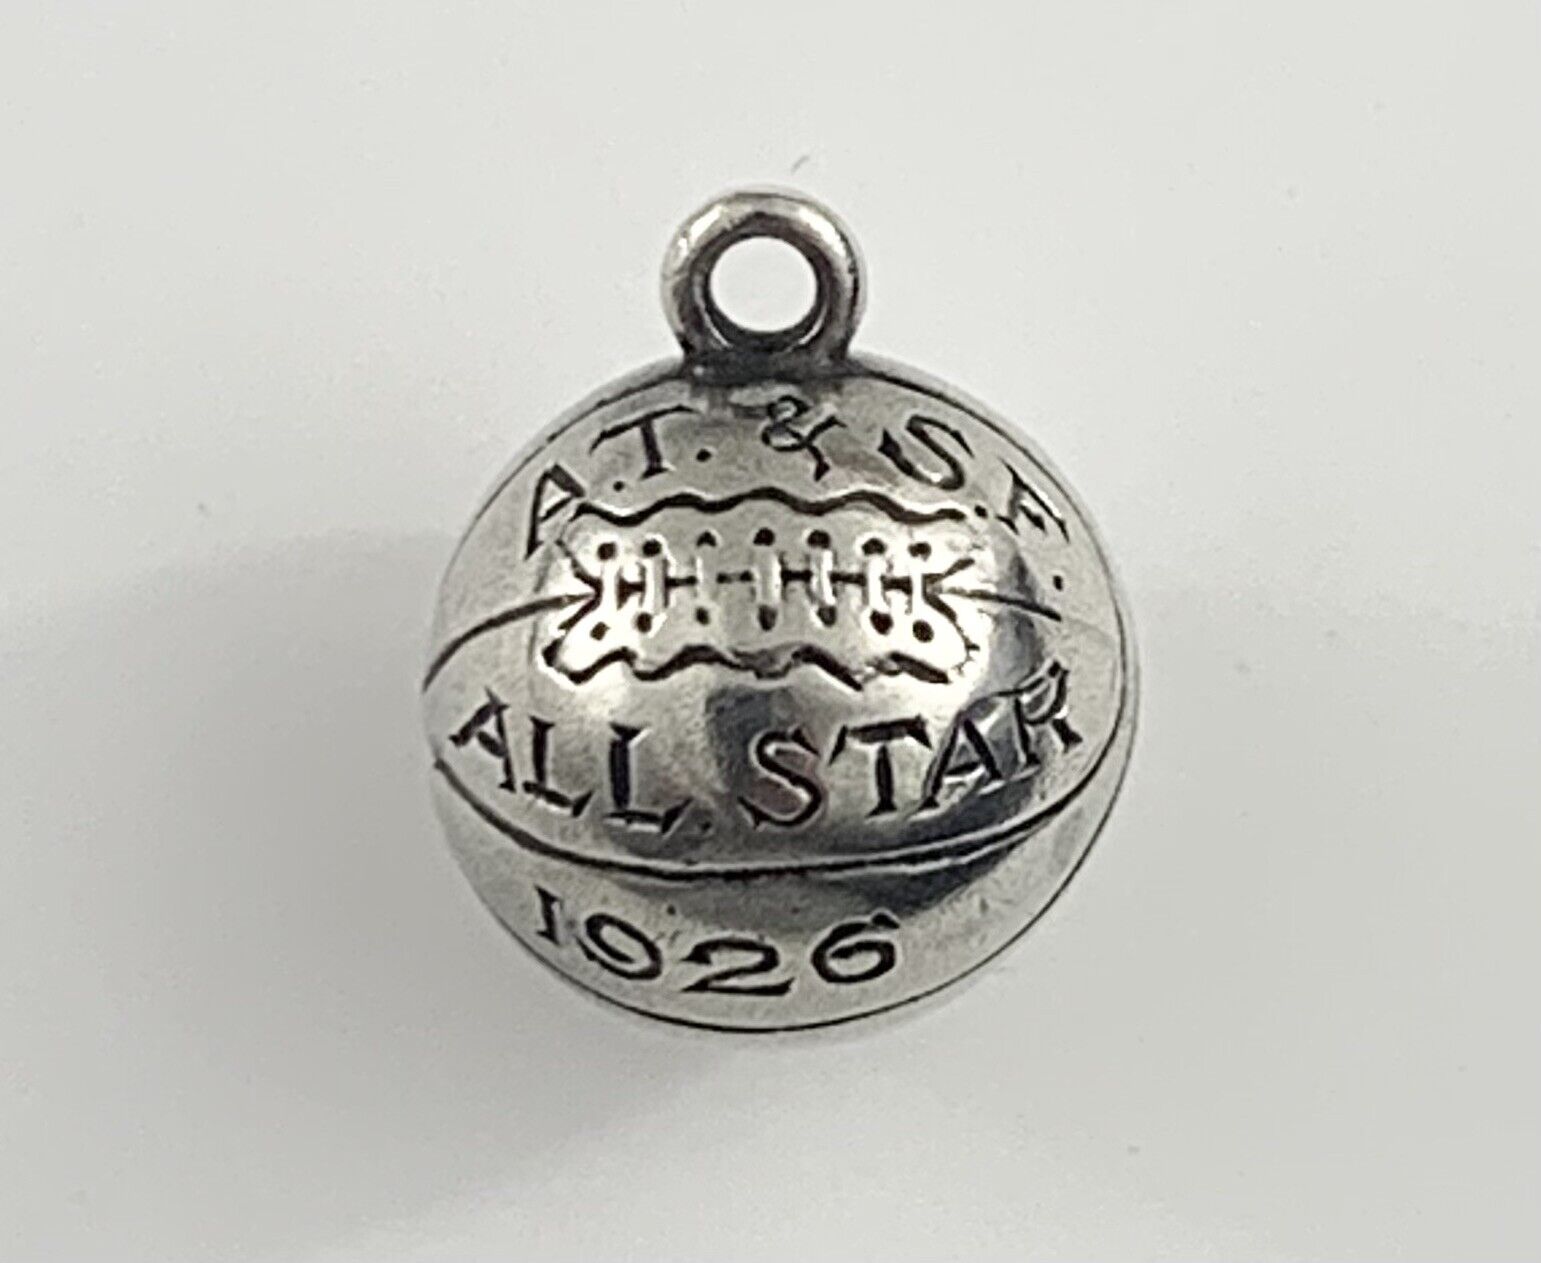 Rare 1926 ATSF Atchison Topeka Santa Fe Railway Sterling Silver Basketball Award